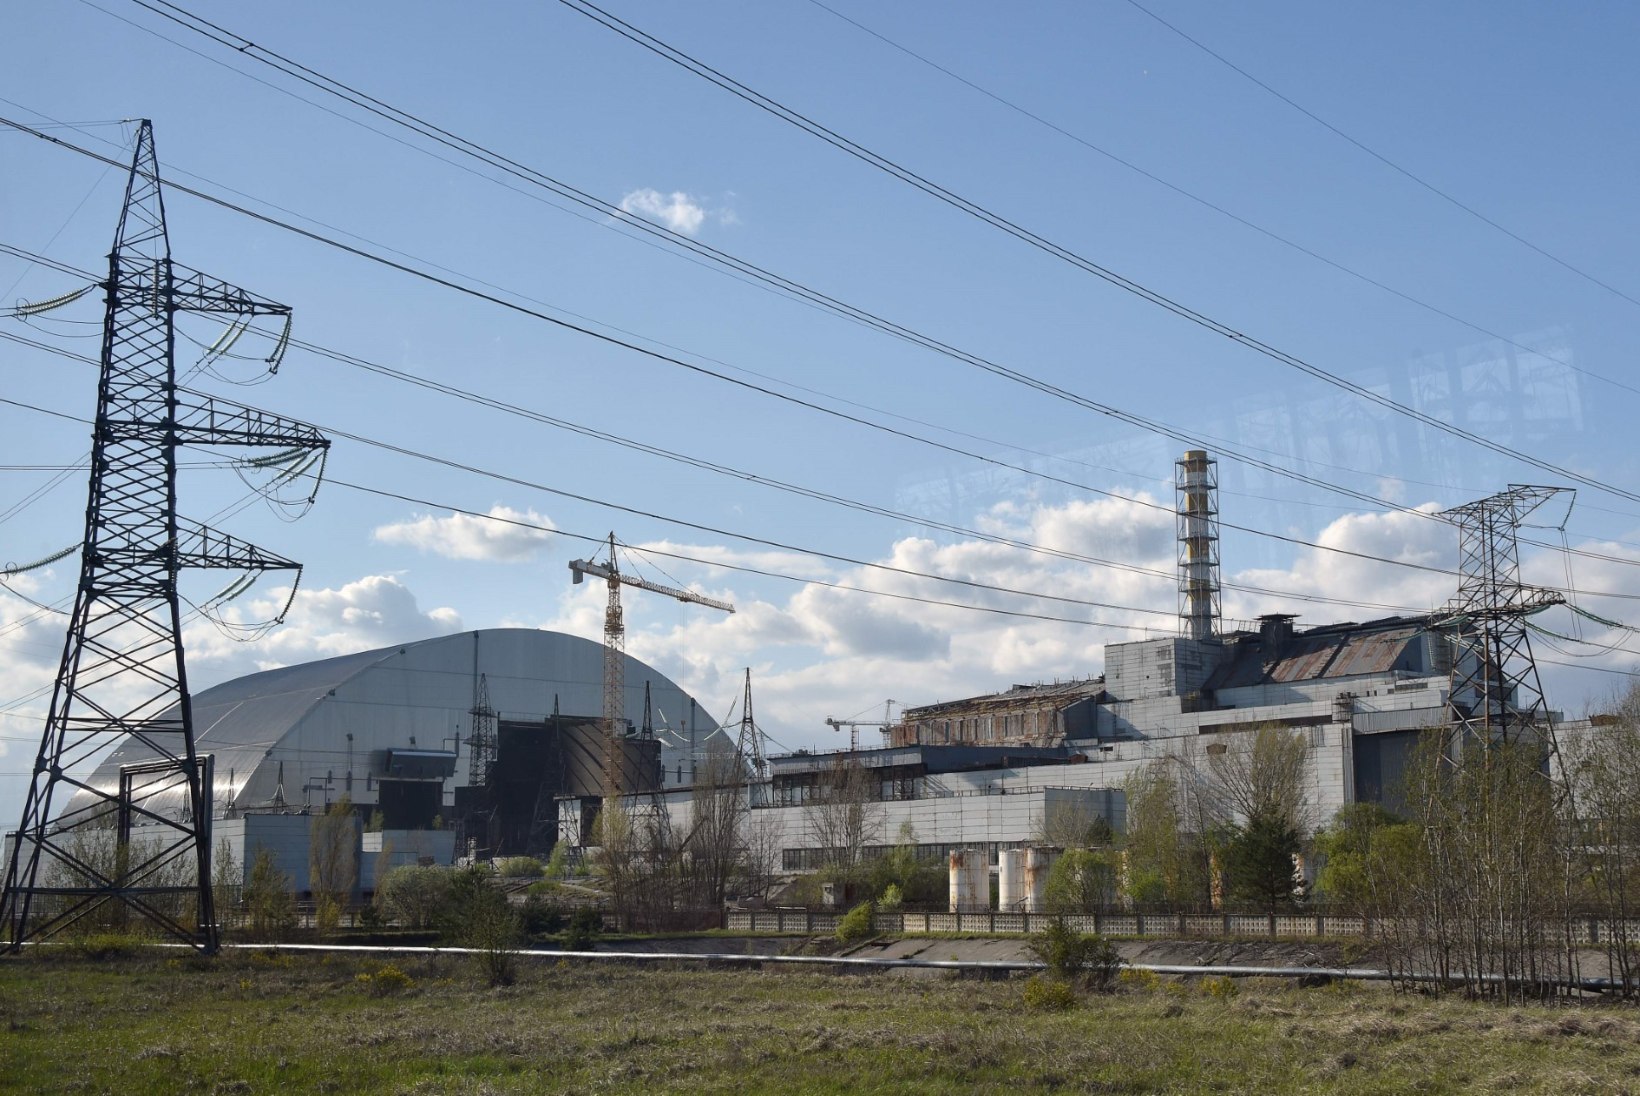 FOTOD | Tšernobõl 30 aastat hiljem